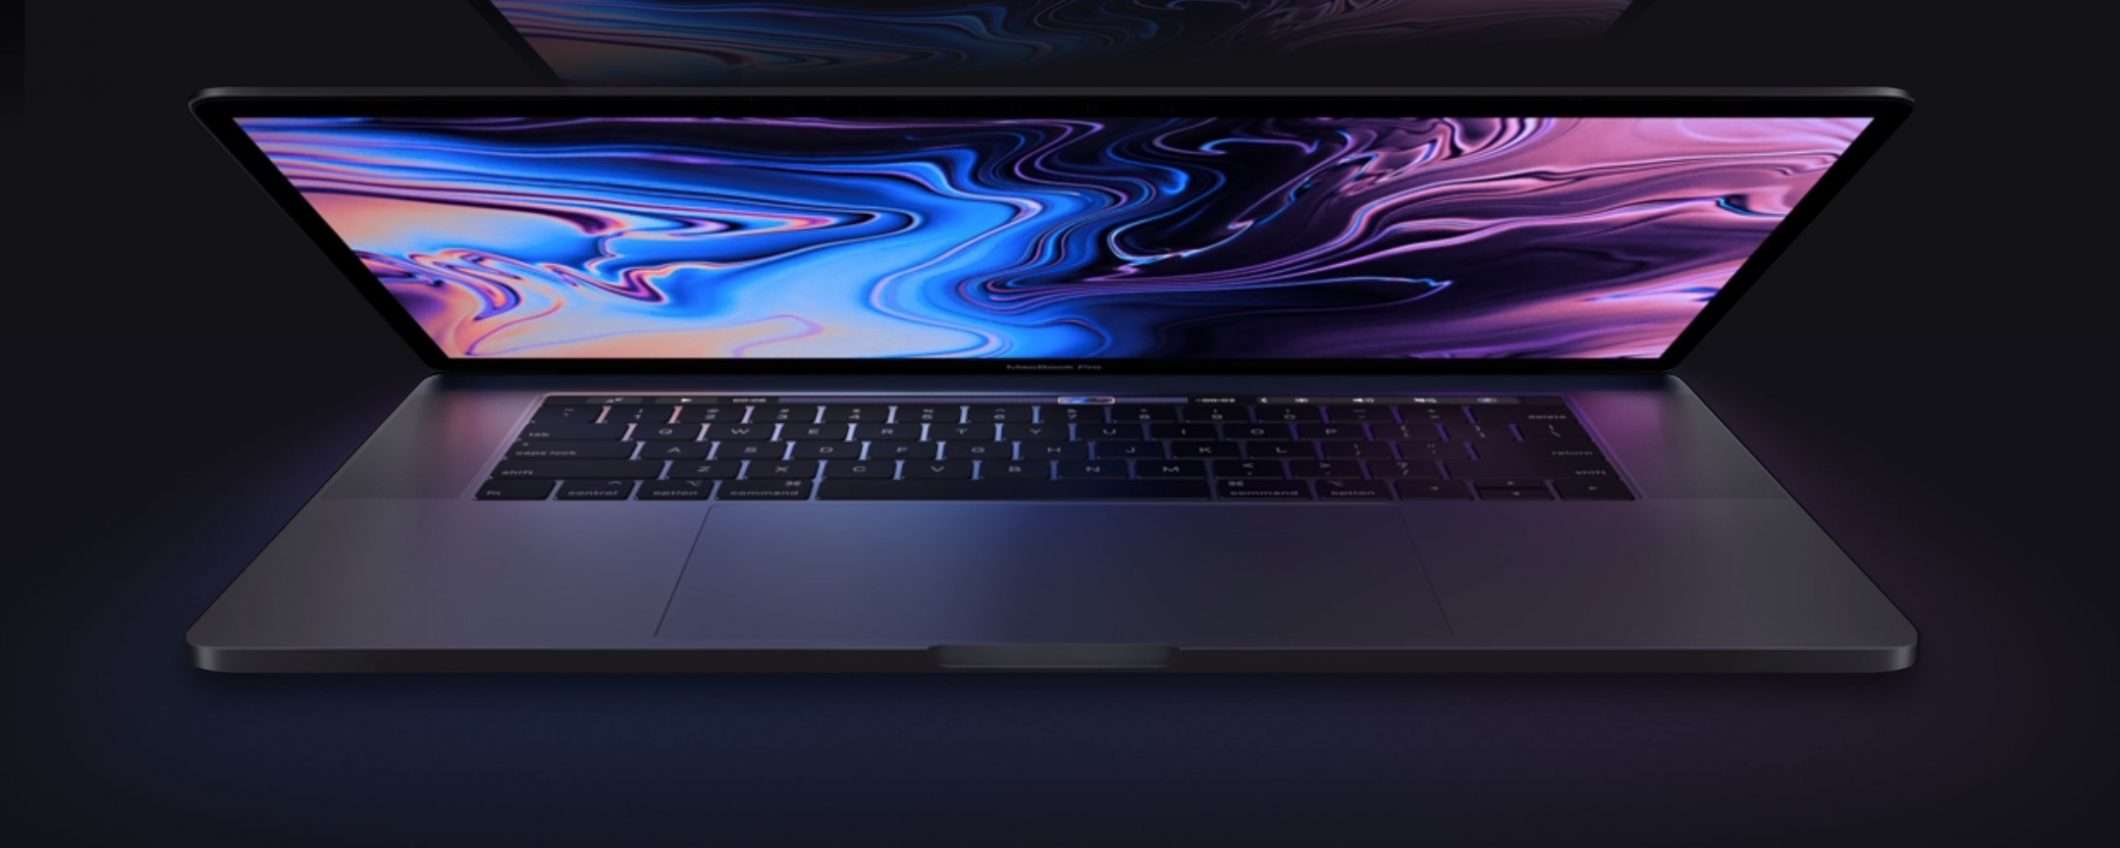 Apple, ecco i nuovi MacBook Pro